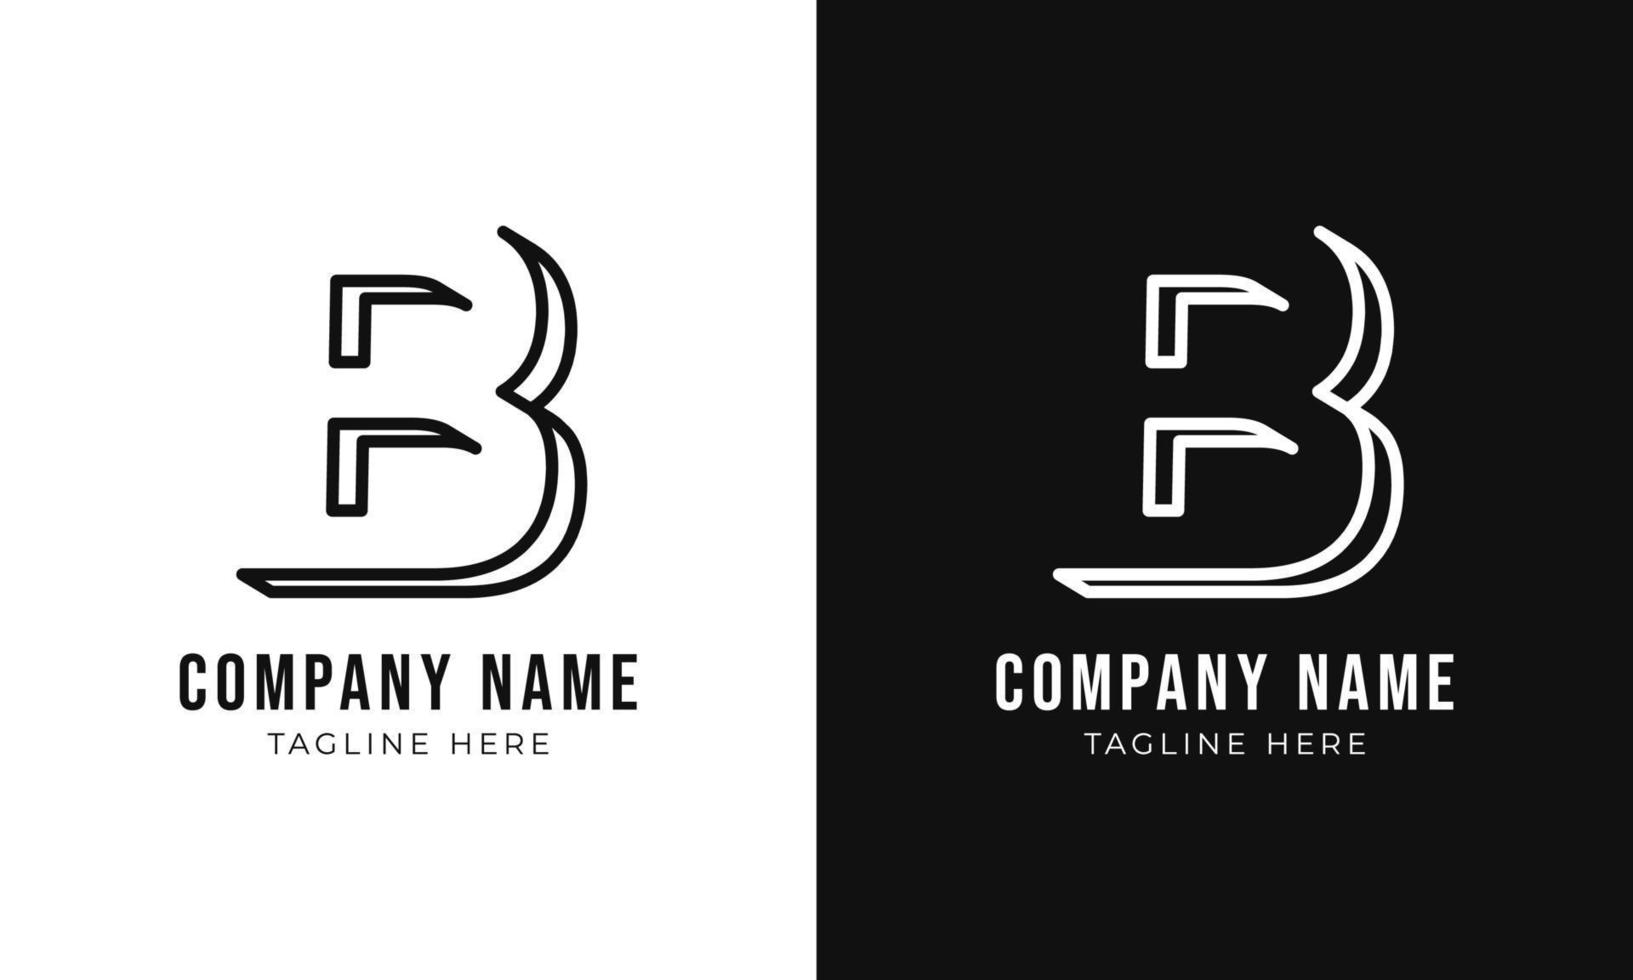 första brev b monogram logotyp design mall. kreativ översikt b typografi och svart färger. vektor